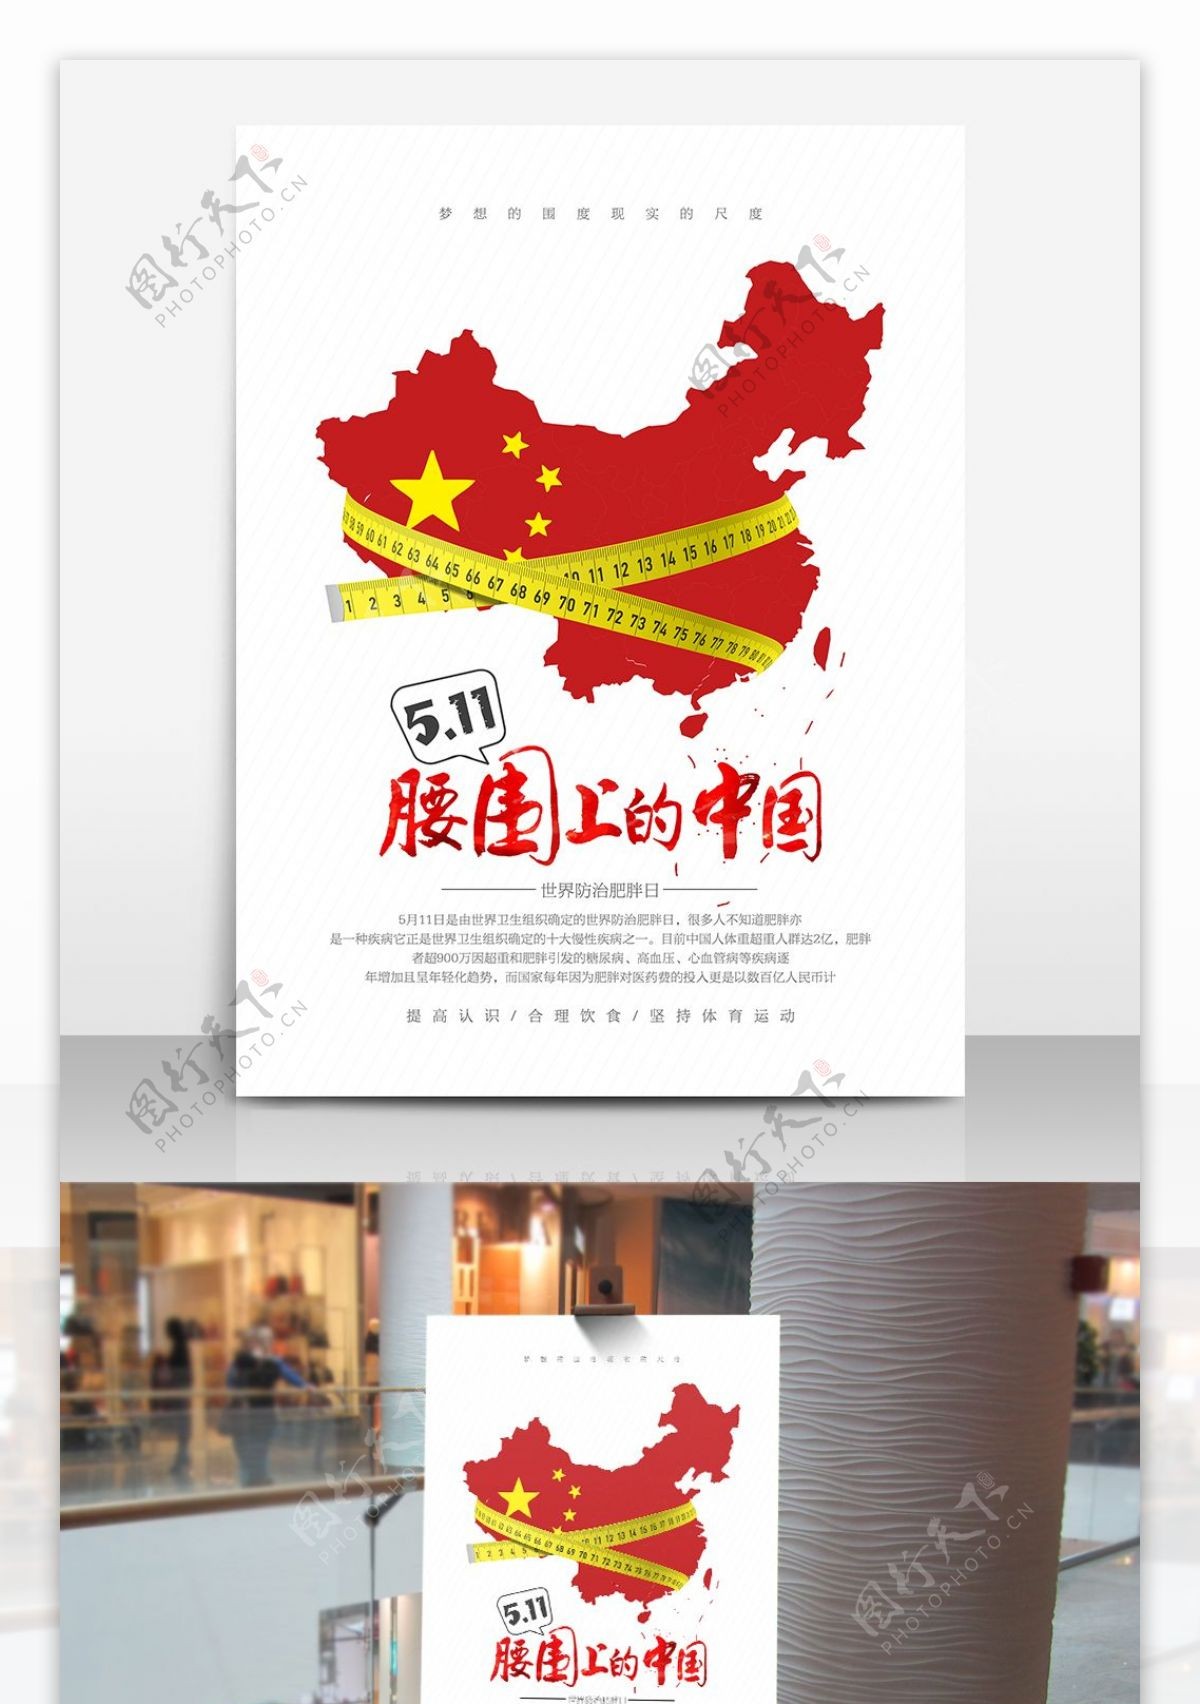 创意腰围上的中国世界防治肥胖日宣传海报